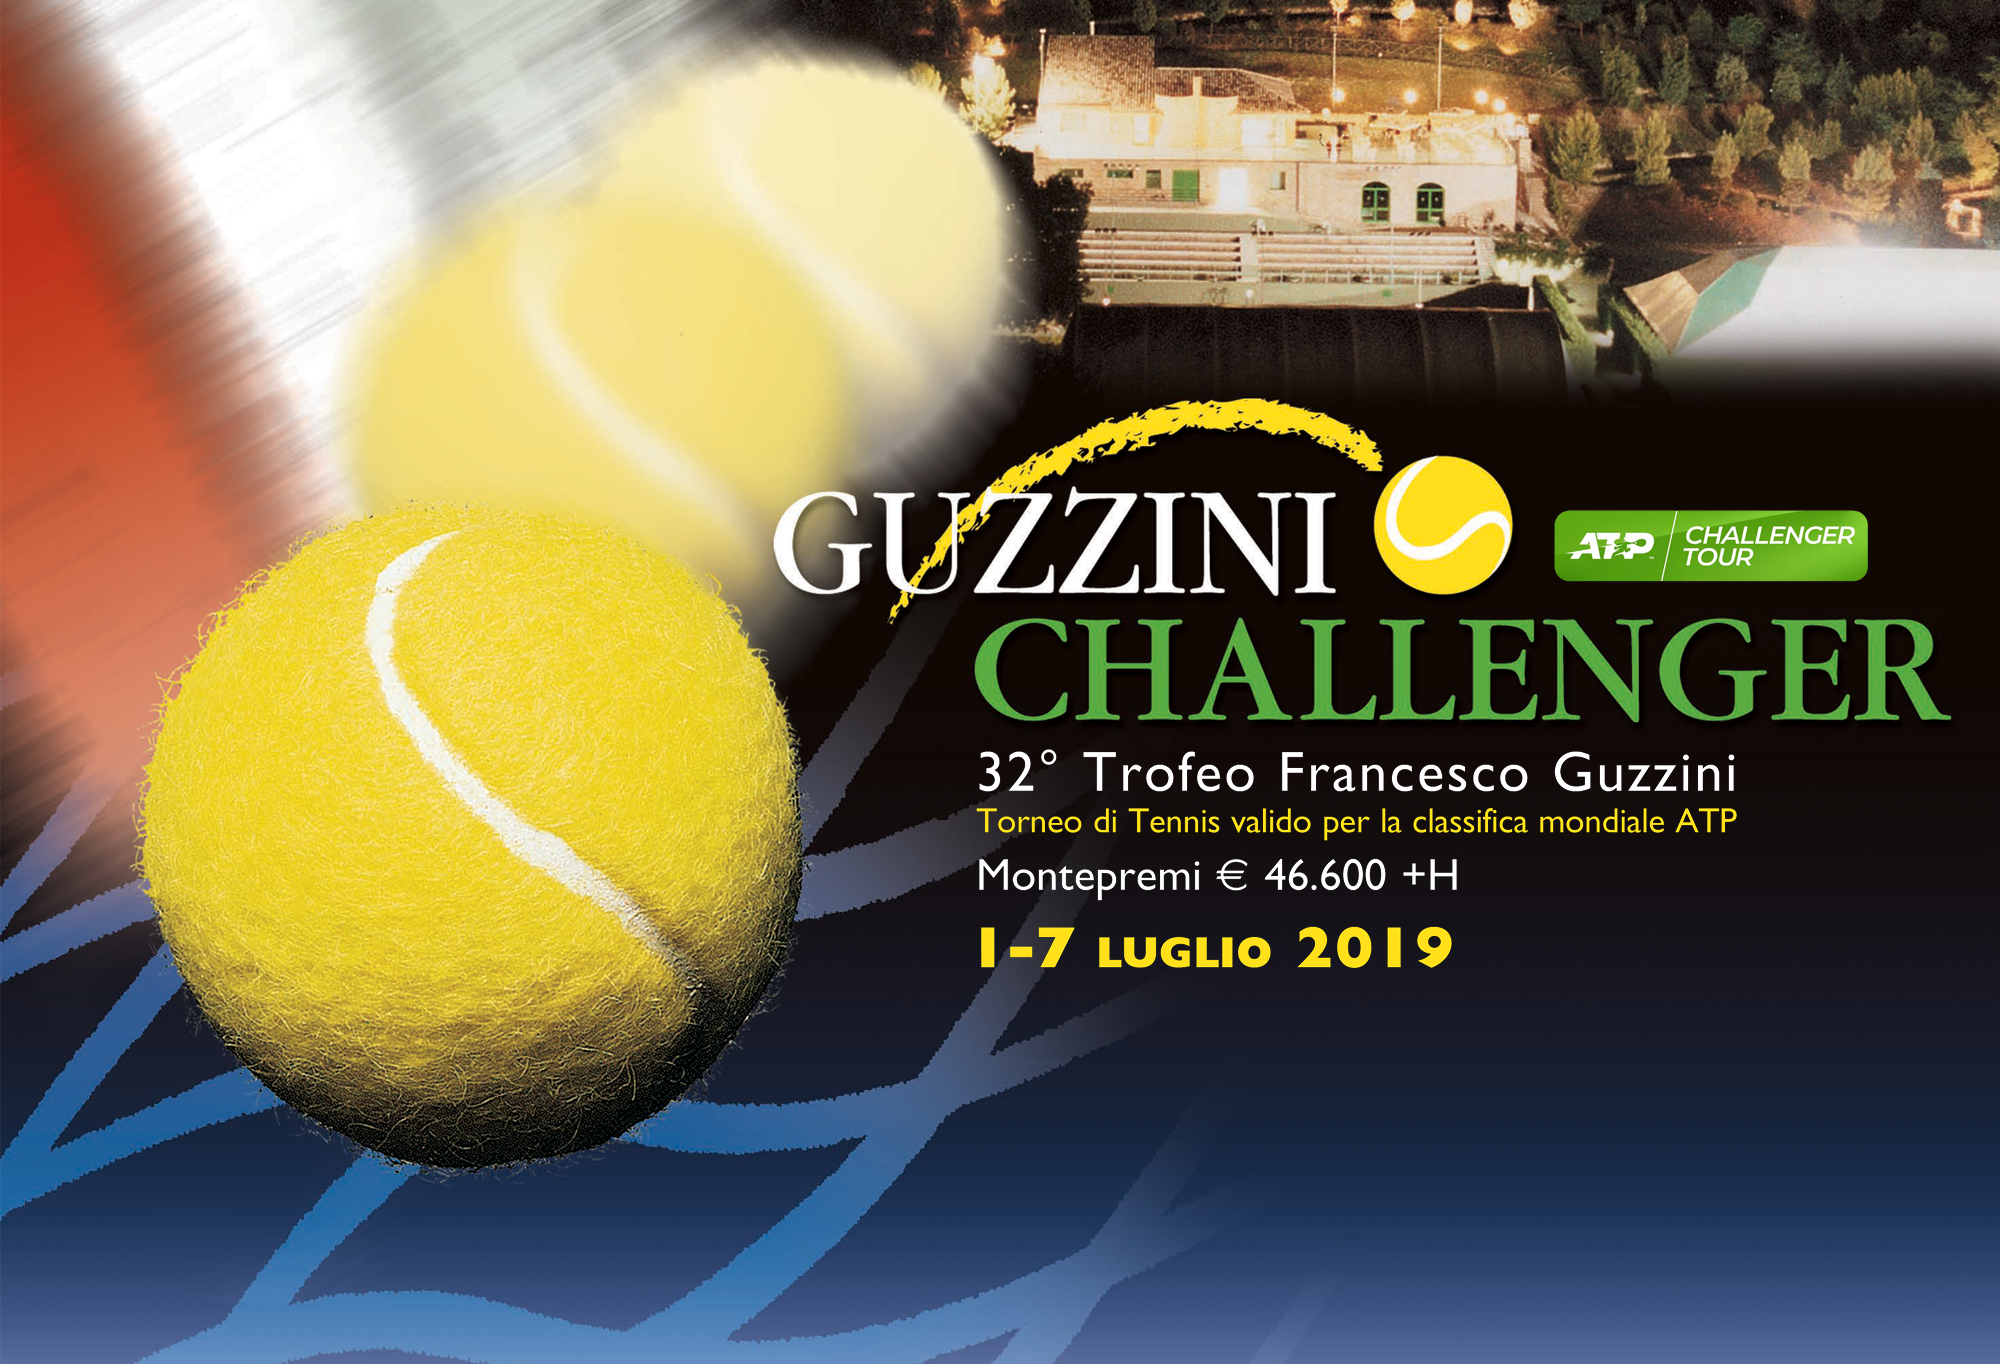 Il grande tennis internazionale torna a Recanati per il 32° trofeo Francesco Guzzini